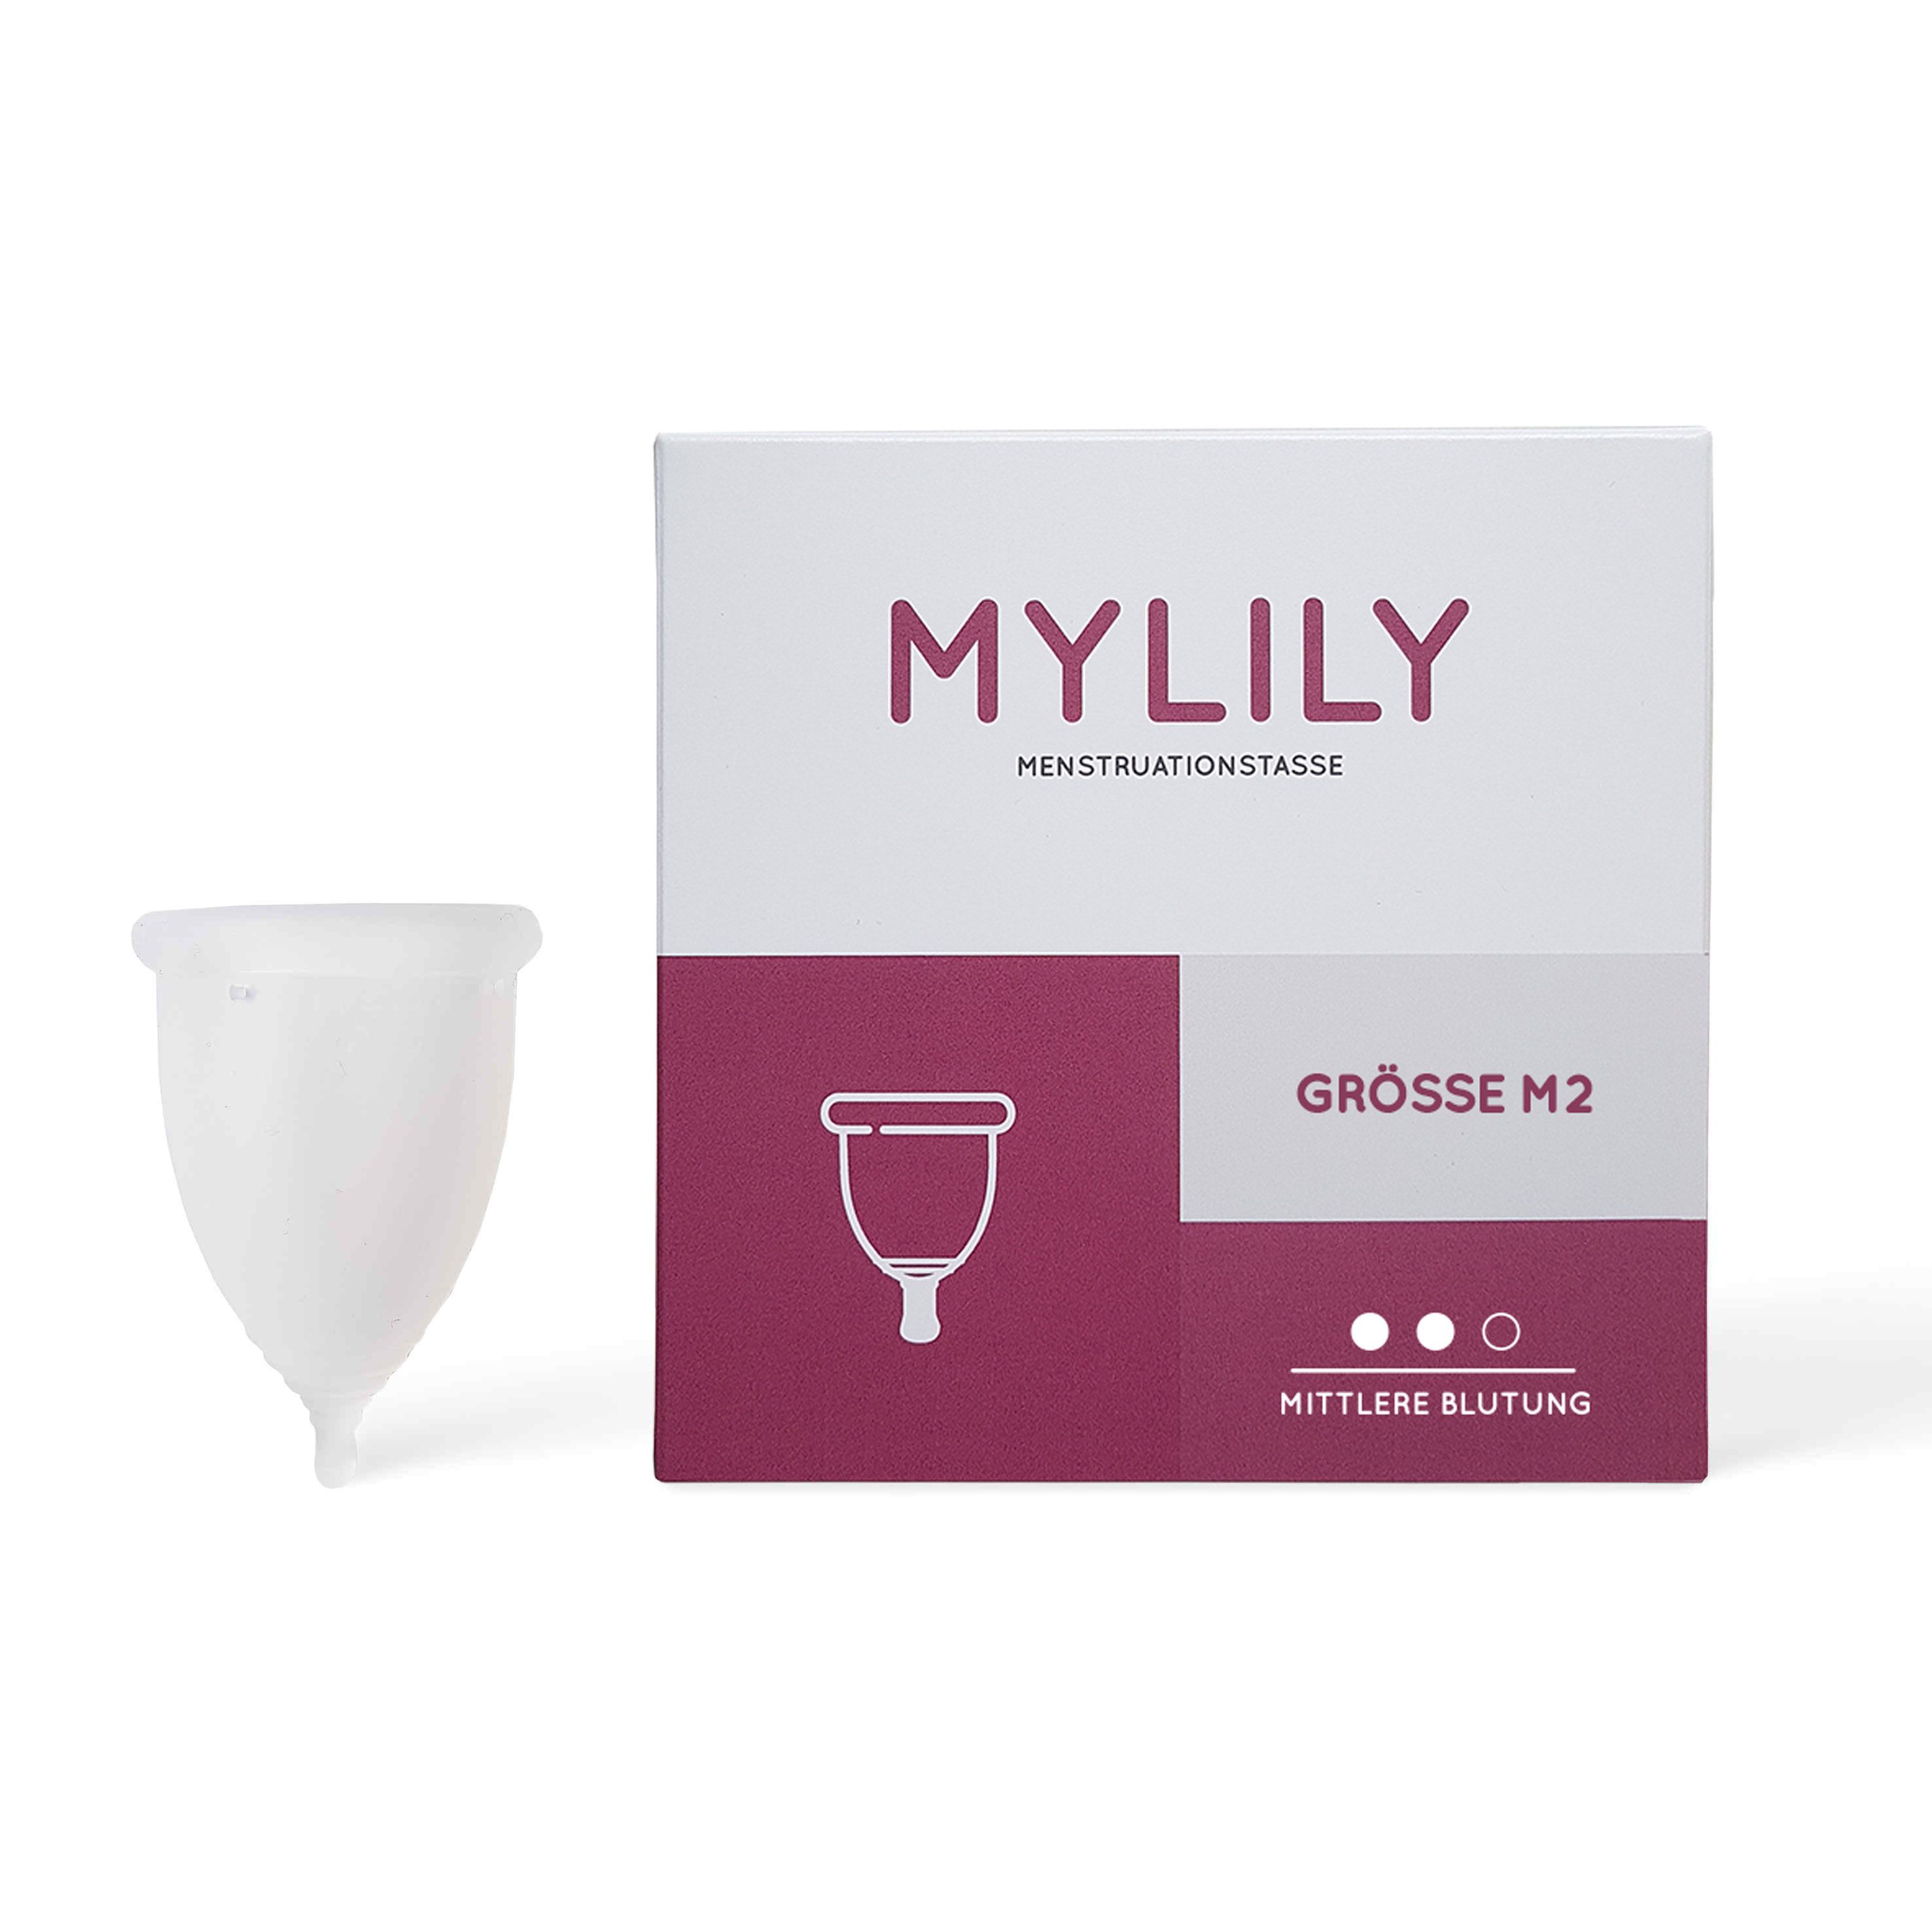 Mylily Menstruationstasse - M2